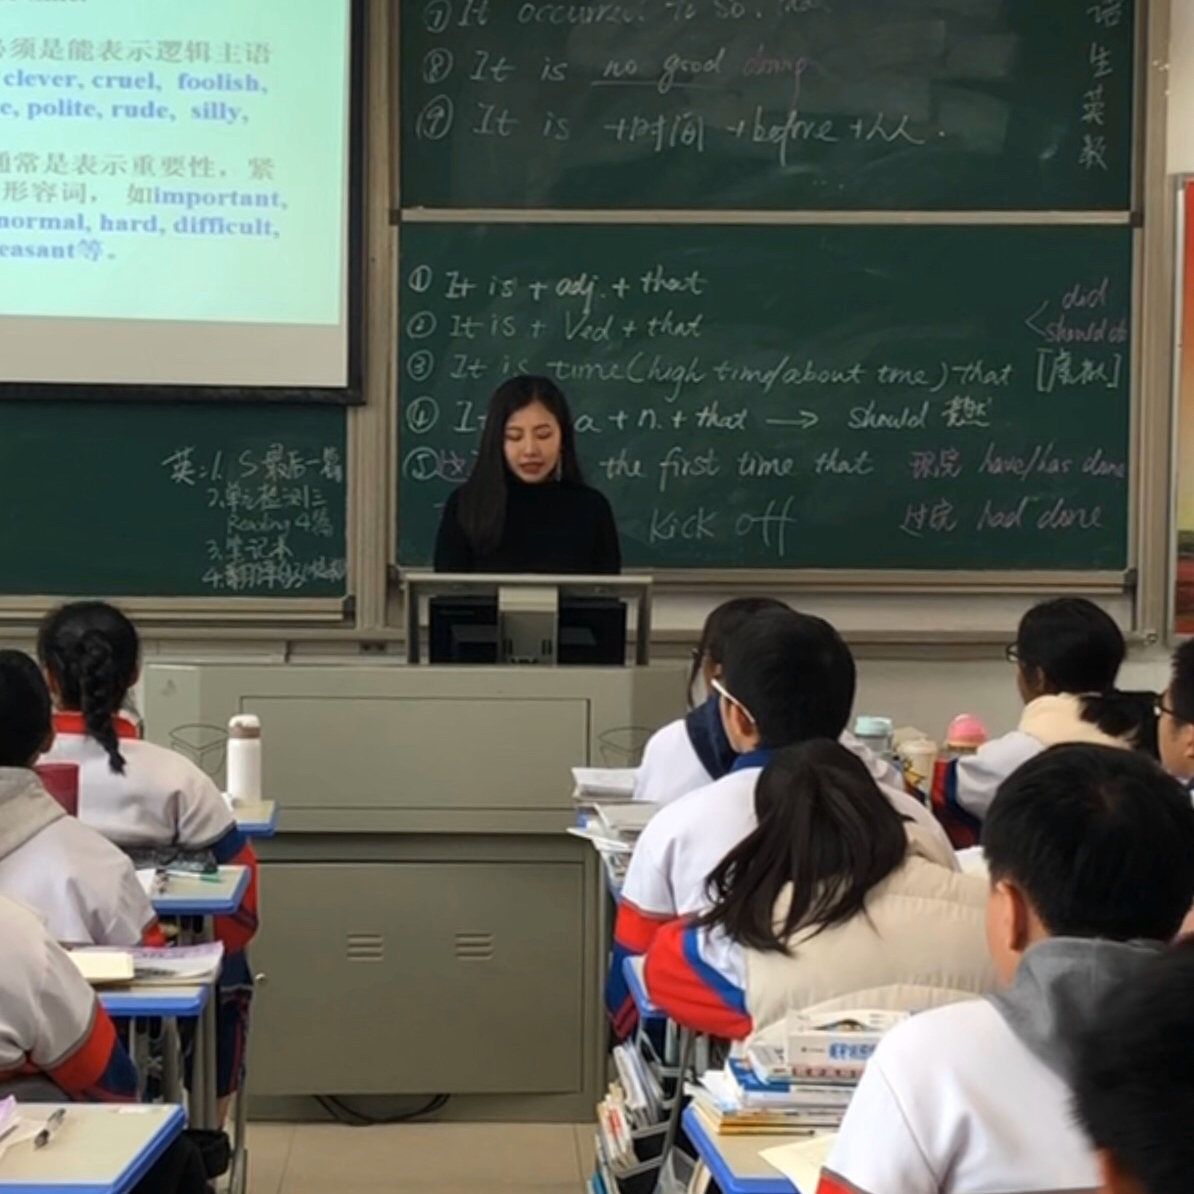 [旧闻]江苏32岁英语女老师畸恋15岁男学生